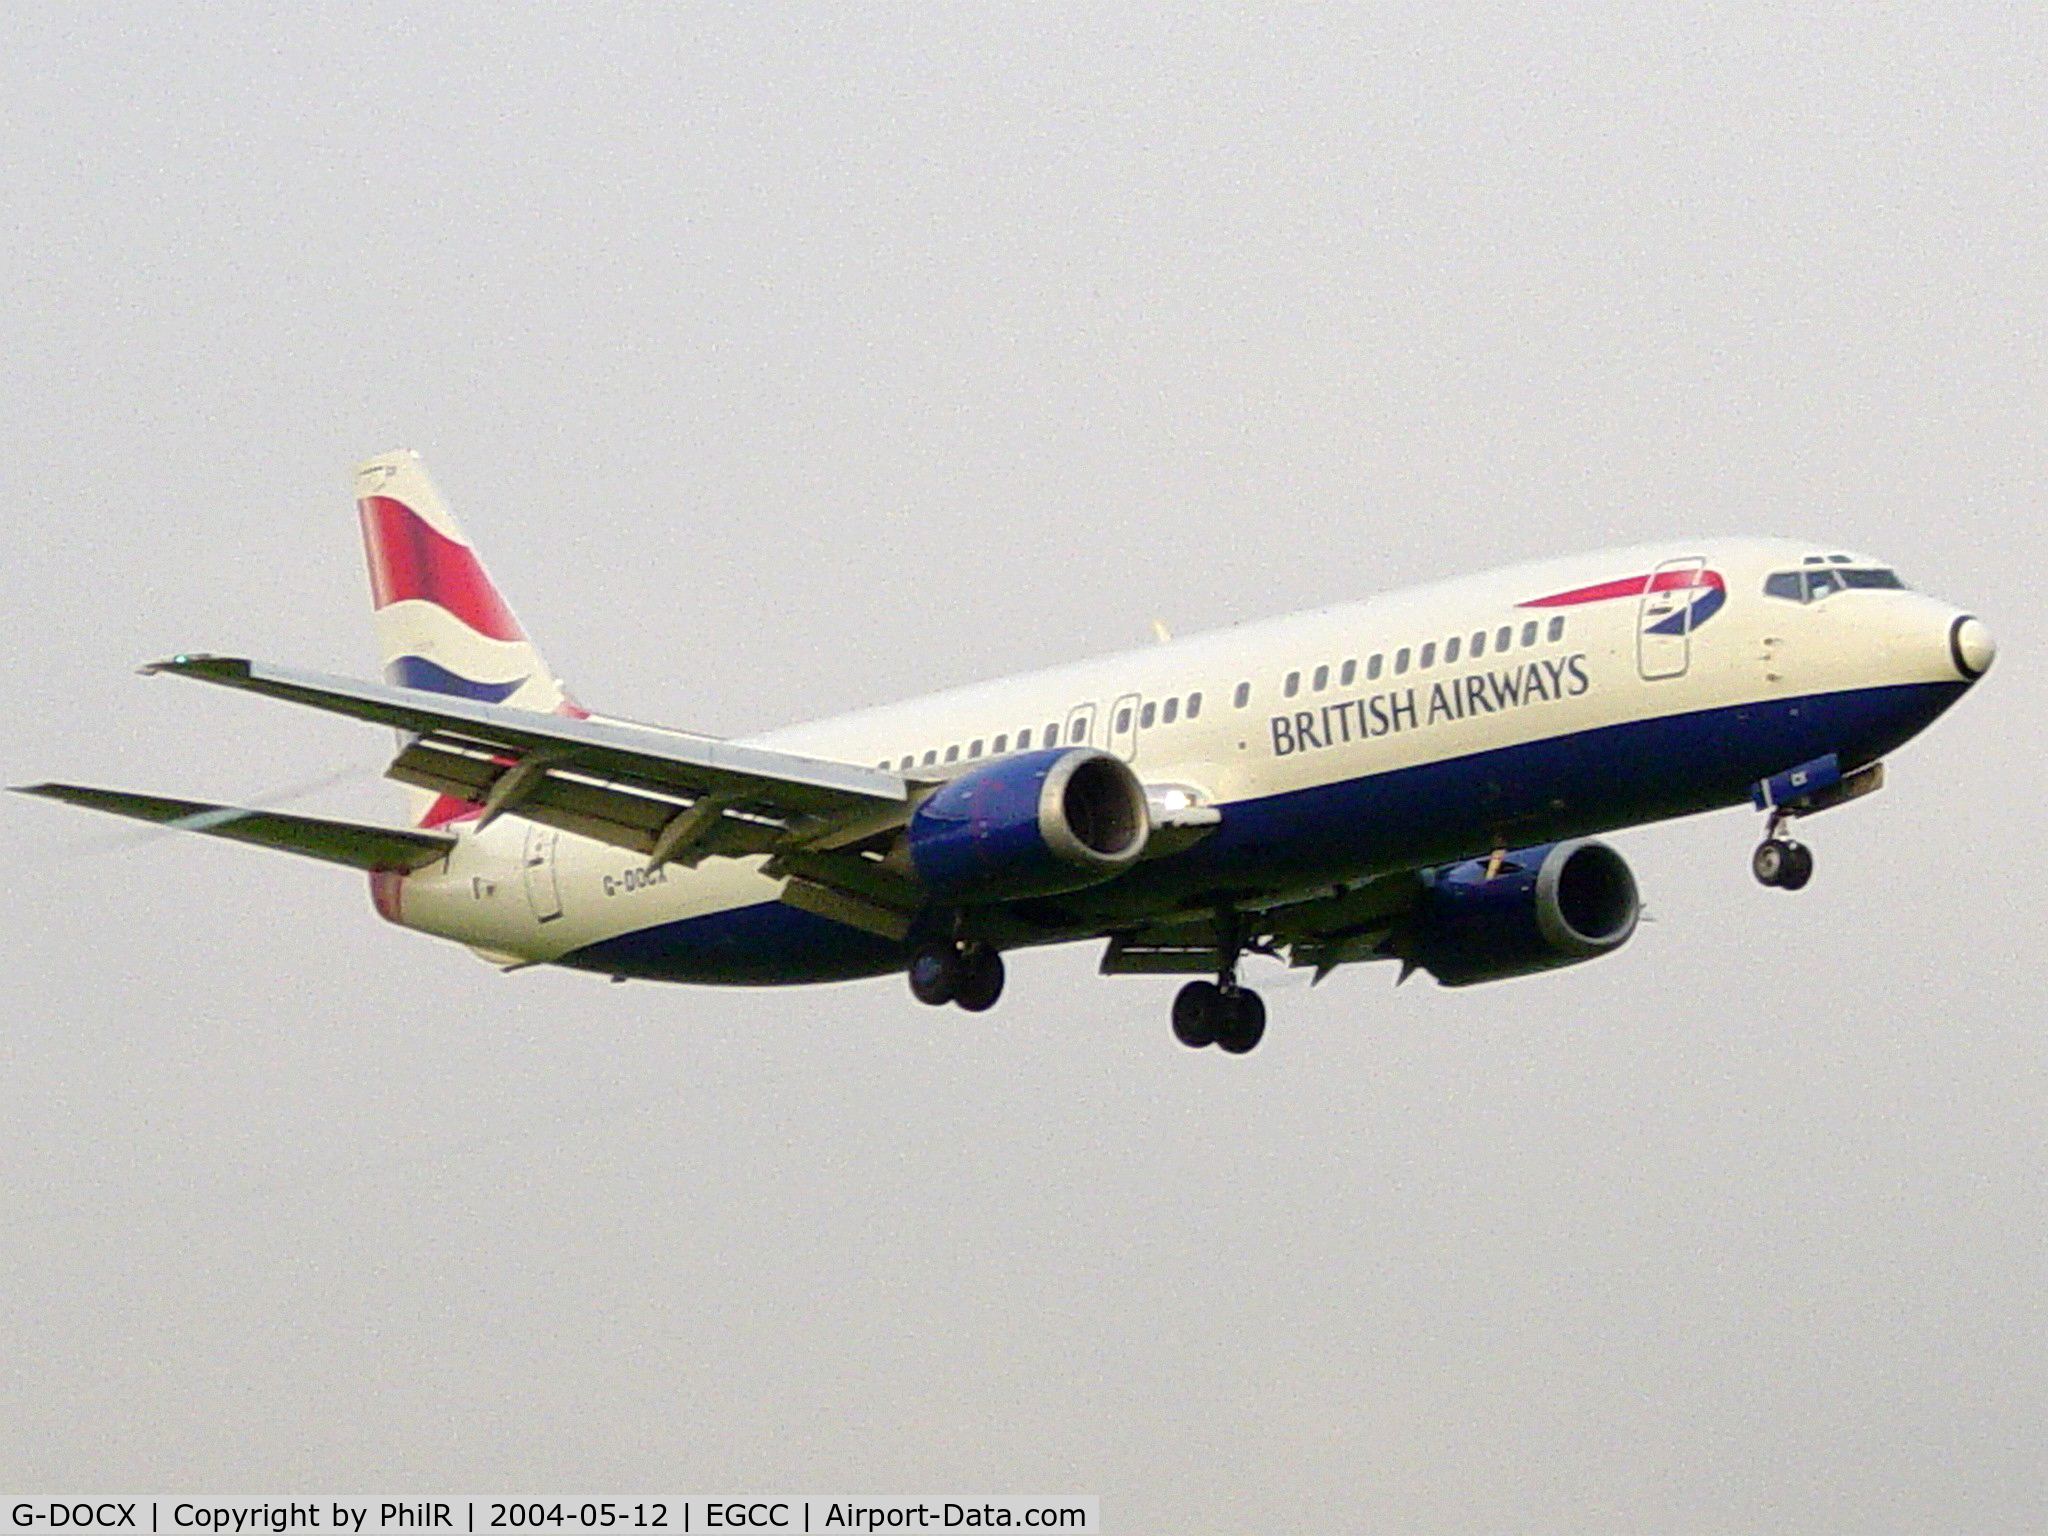 G-DOCX, 1993 Boeing 737-436 C/N 25857, British Airways 1993 Boeing 737-400 G-DOCX MAN